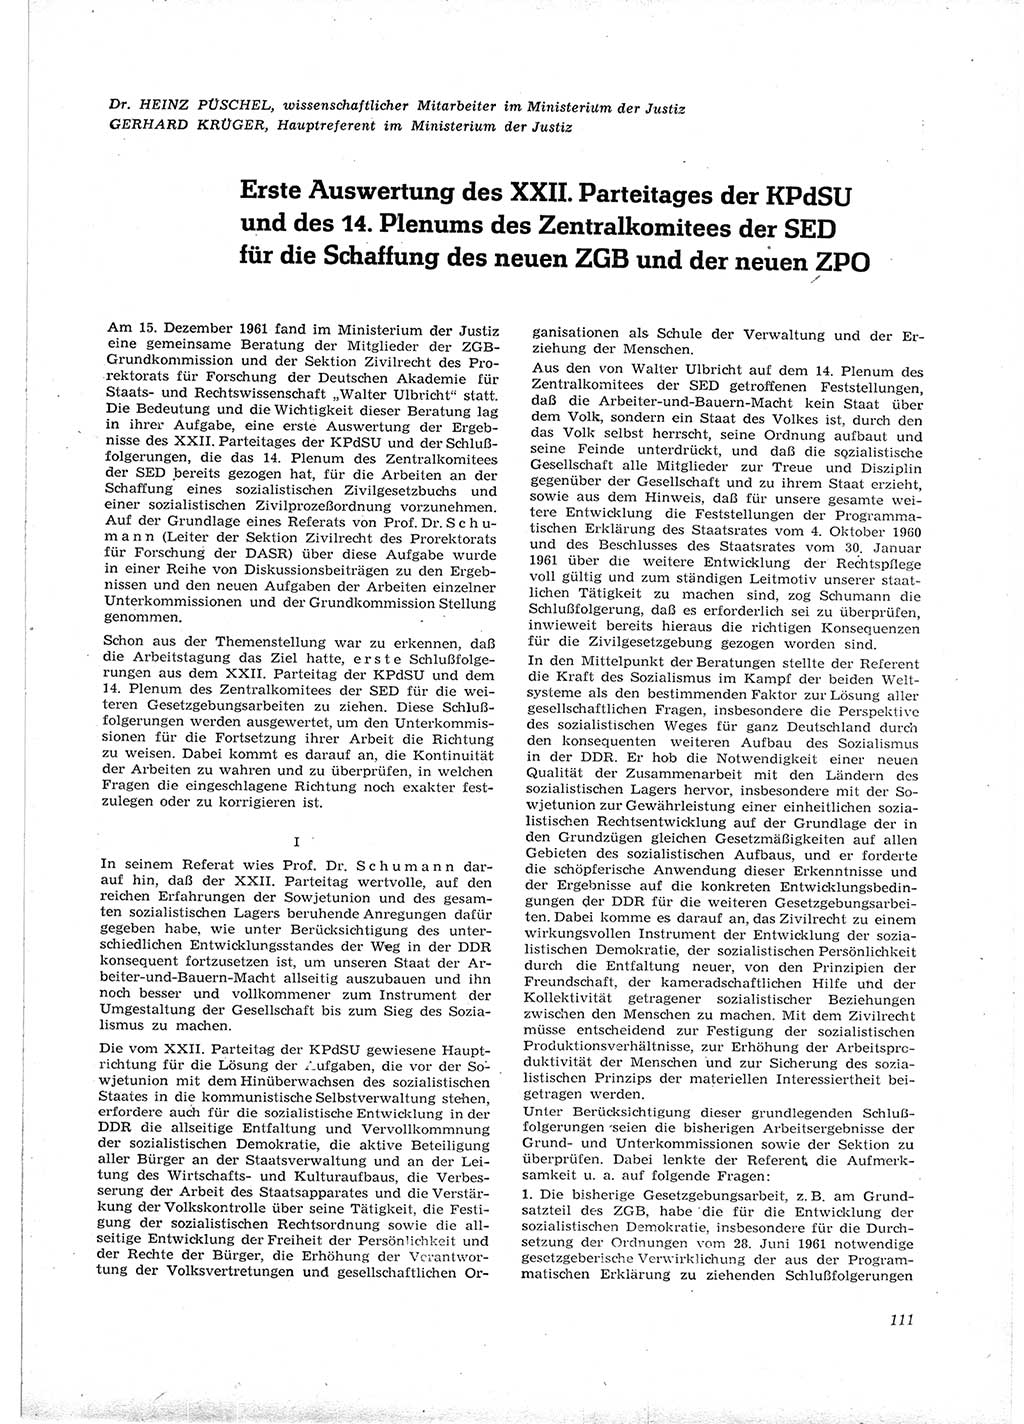 Neue Justiz (NJ), Zeitschrift für Recht und Rechtswissenschaft [Deutsche Demokratische Republik (DDR)], 16. Jahrgang 1962, Seite 111 (NJ DDR 1962, S. 111)